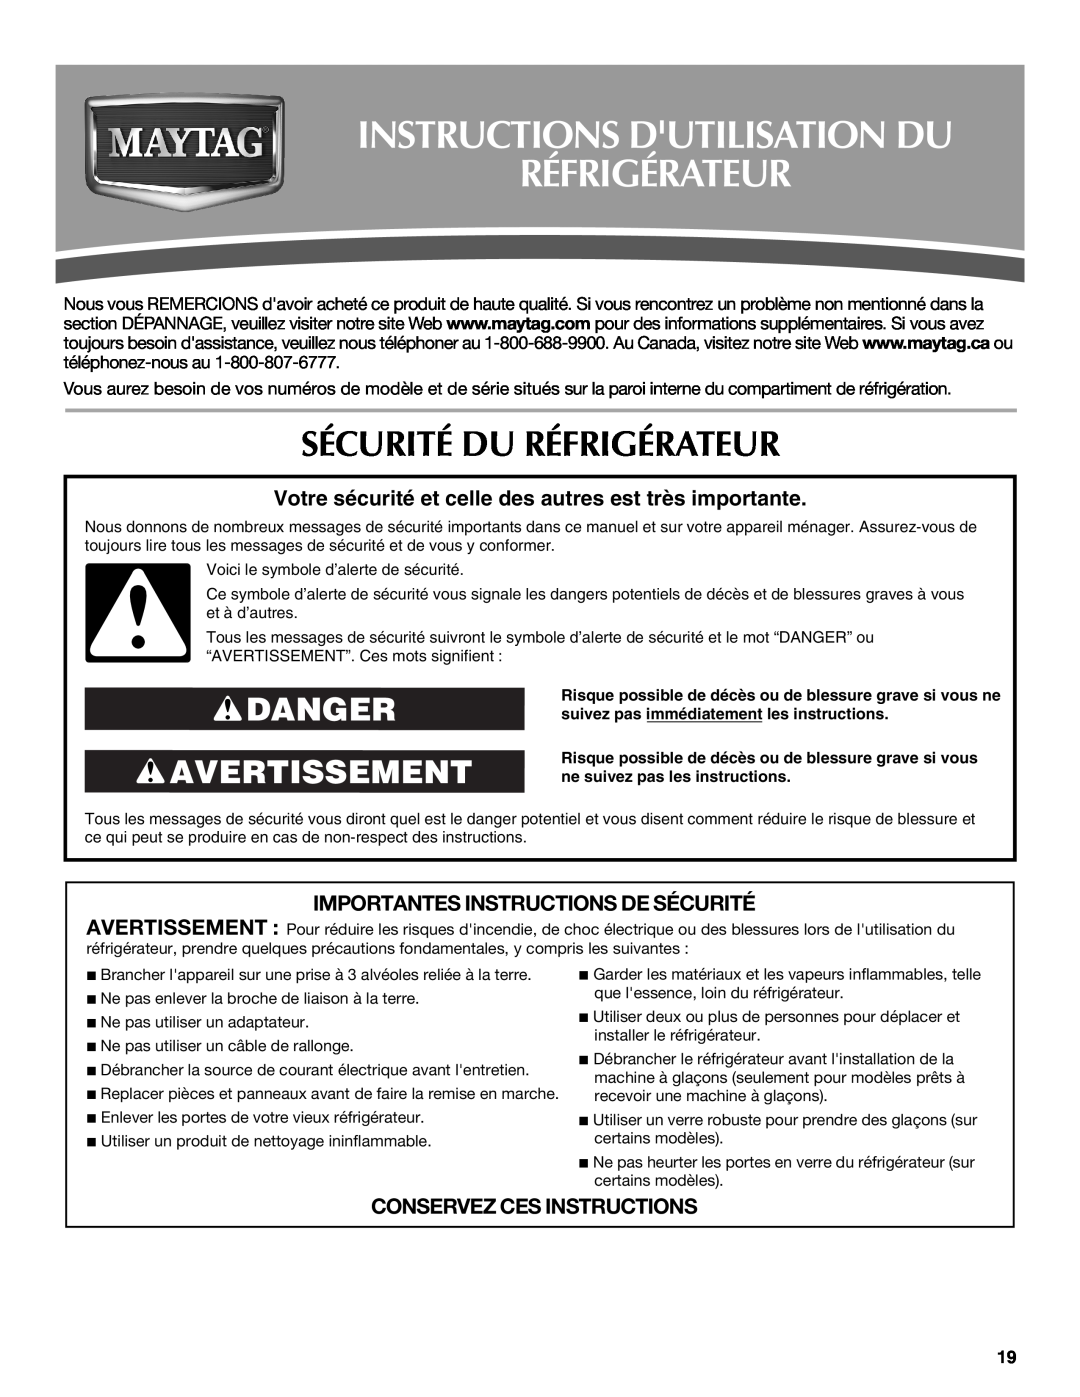 Maytag MSD2559XEB, MSD2559XEW Instructions Dutilisation Du Réfrigérateur, Sécurité Du Réfrigérateur, Danger Avertissement 